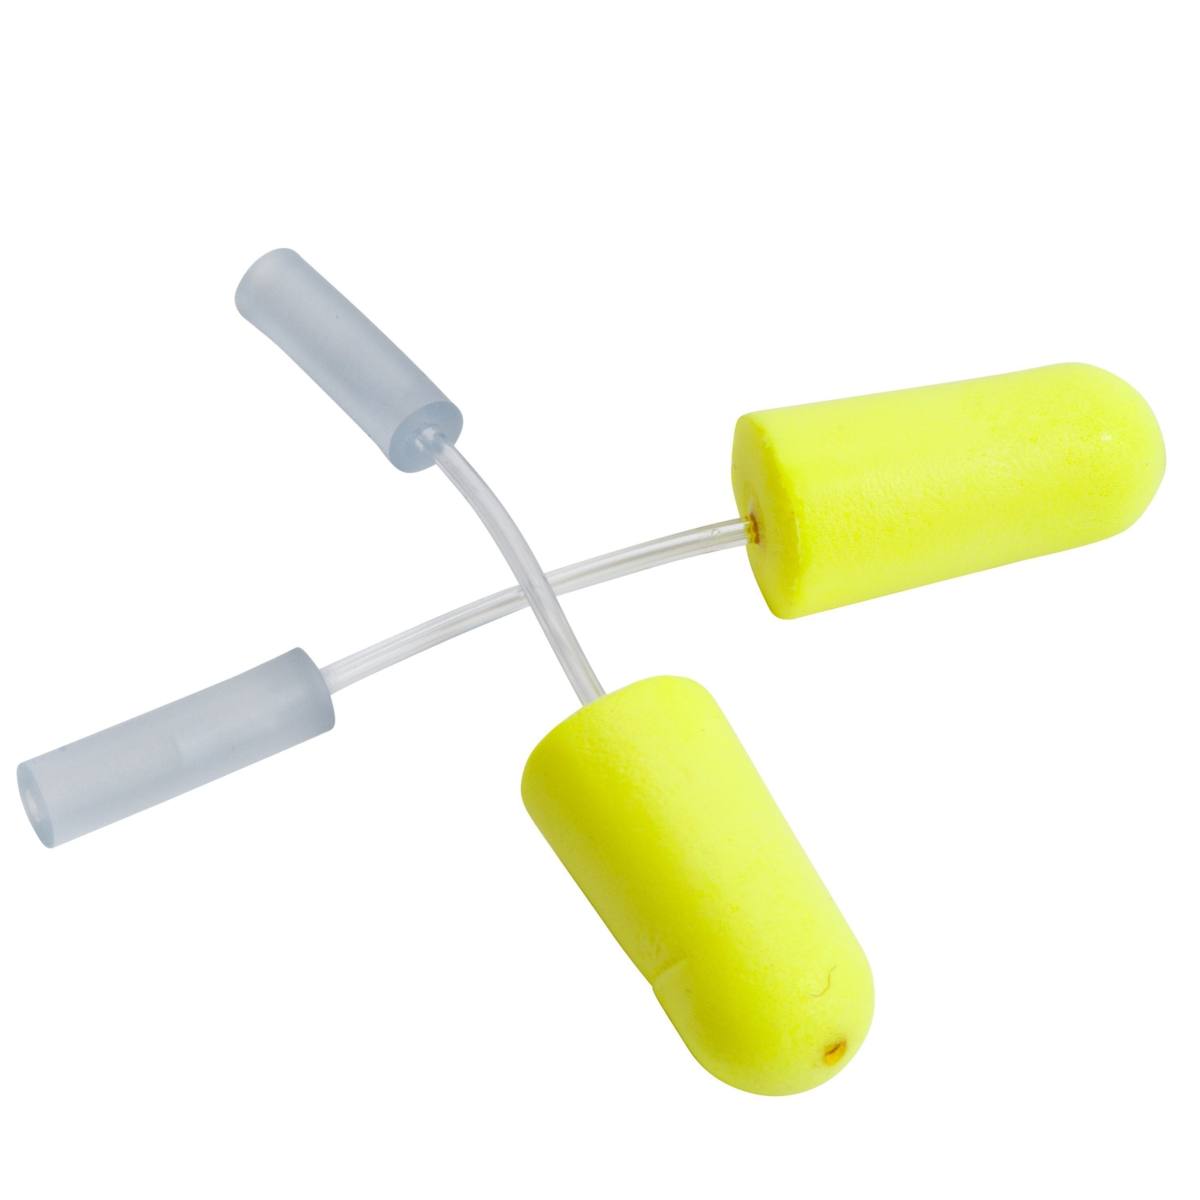 3M E-A-R E-A-Rsoft Bouchons d'oreille jaune fluo pour test d'étanchéité, 393-2000-50